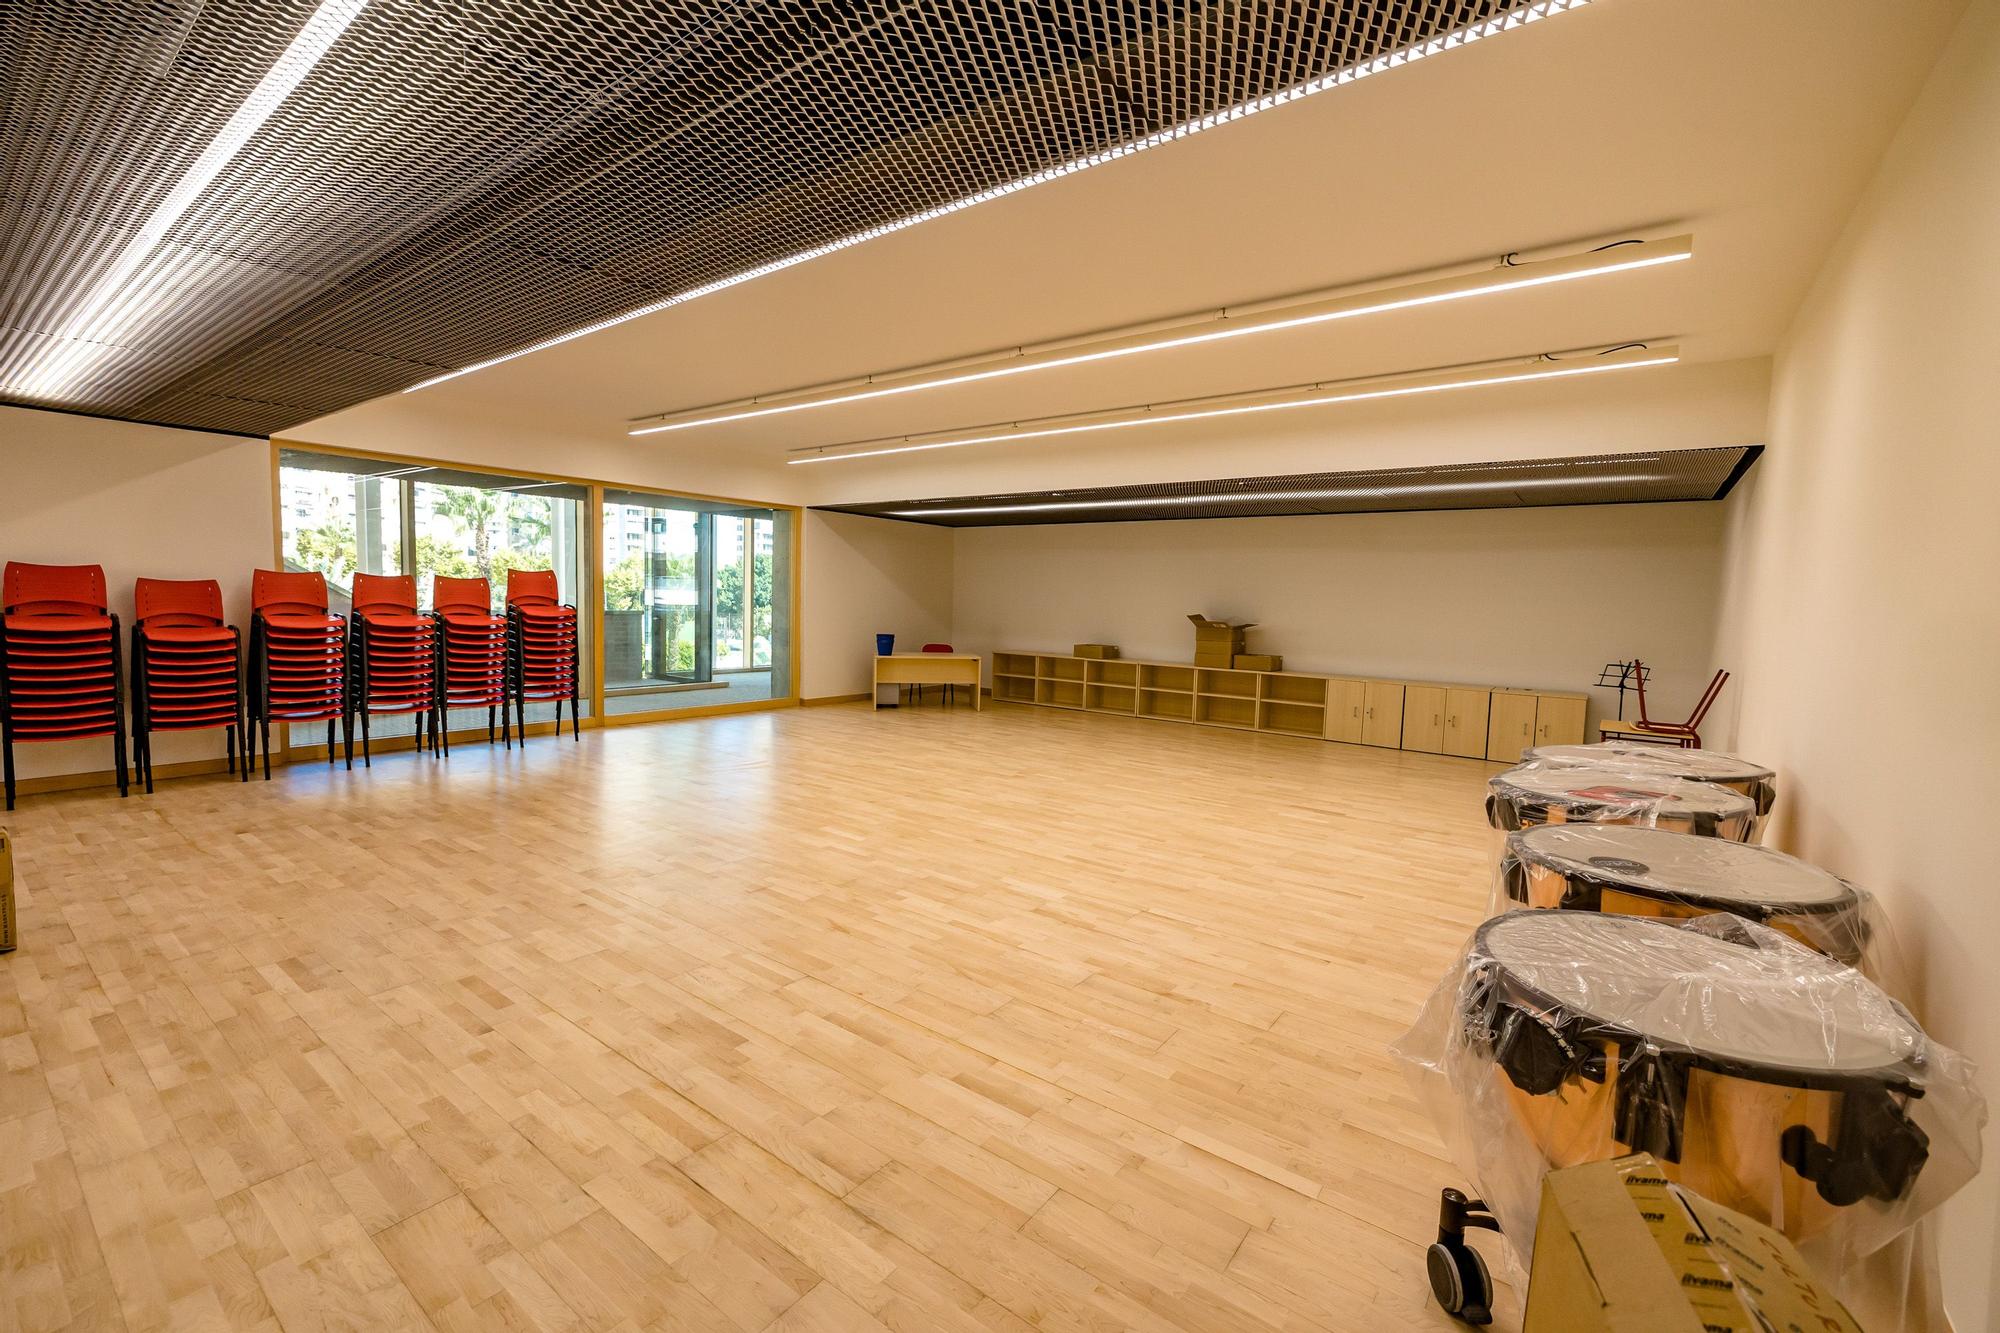 Los centros de estudios profesionales de Música y Danza estrenan por fin su nueva sede en la avenida de Europa tras más de una década de espera. El Ayuntamiento ultima los trabajos para amueblar y equipar el edificio en tiempo récord